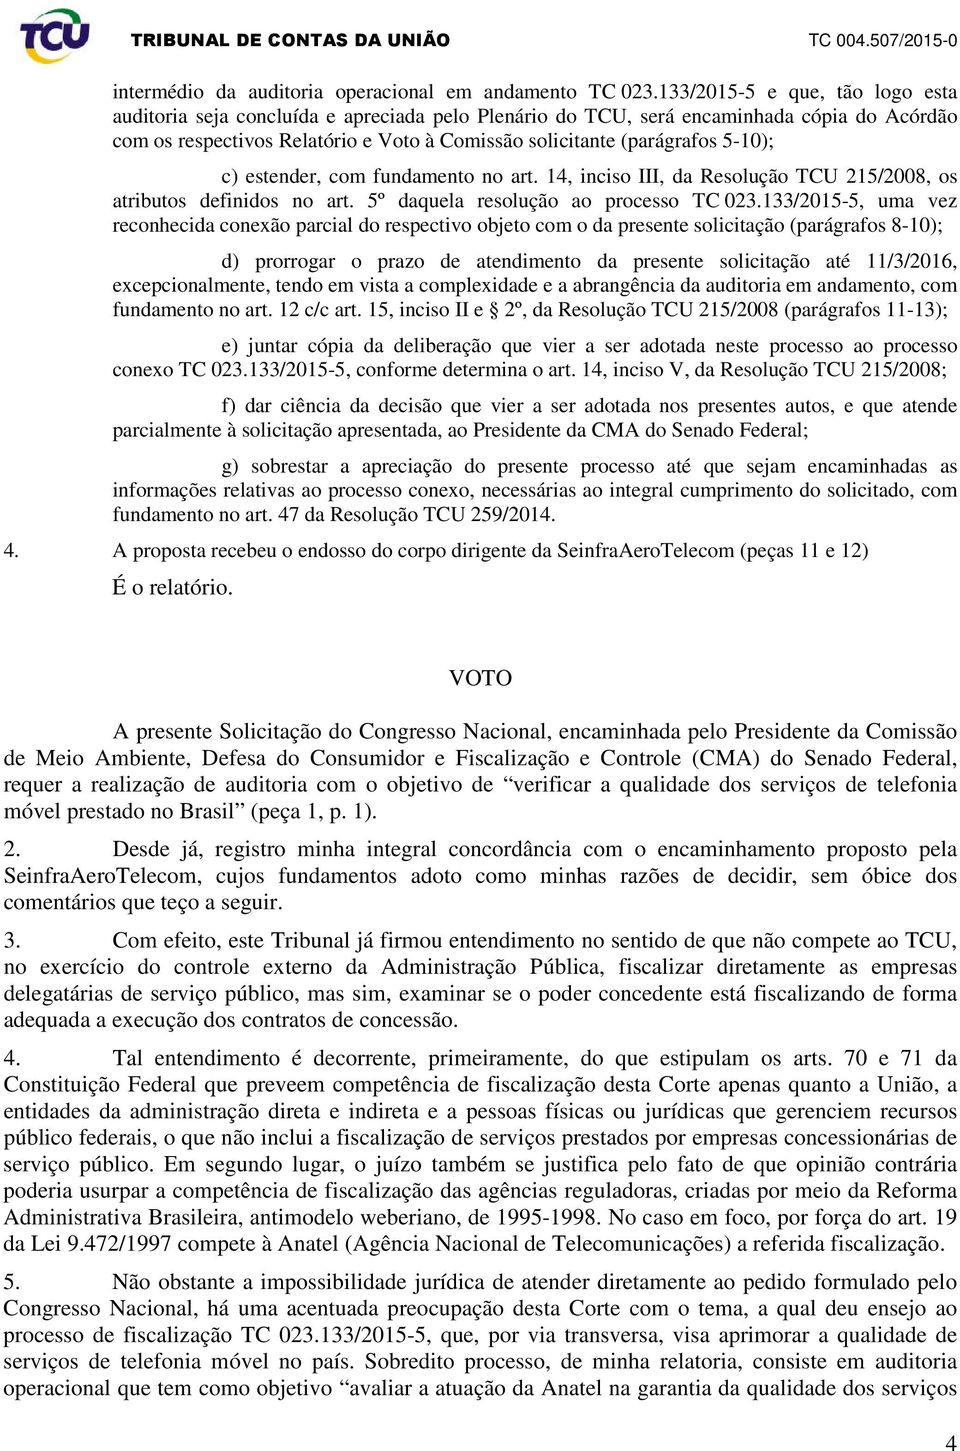 5-10); c) estender, com fundamento no art. 14, inciso III, da Resolução TCU 215/2008, os atributos definidos no art. 5º daquela resolução ao processo TC 023.